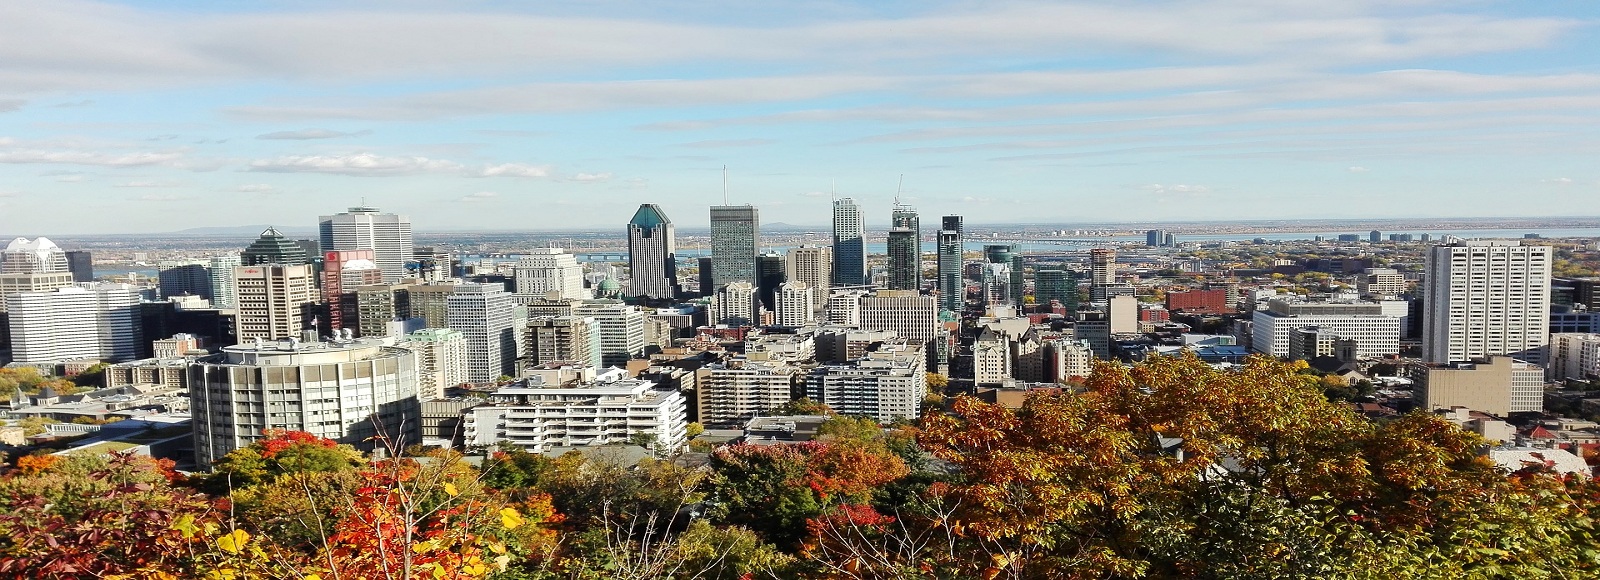 Ofertas de Traslados en Montreal. Traslados económicos en Montreal 